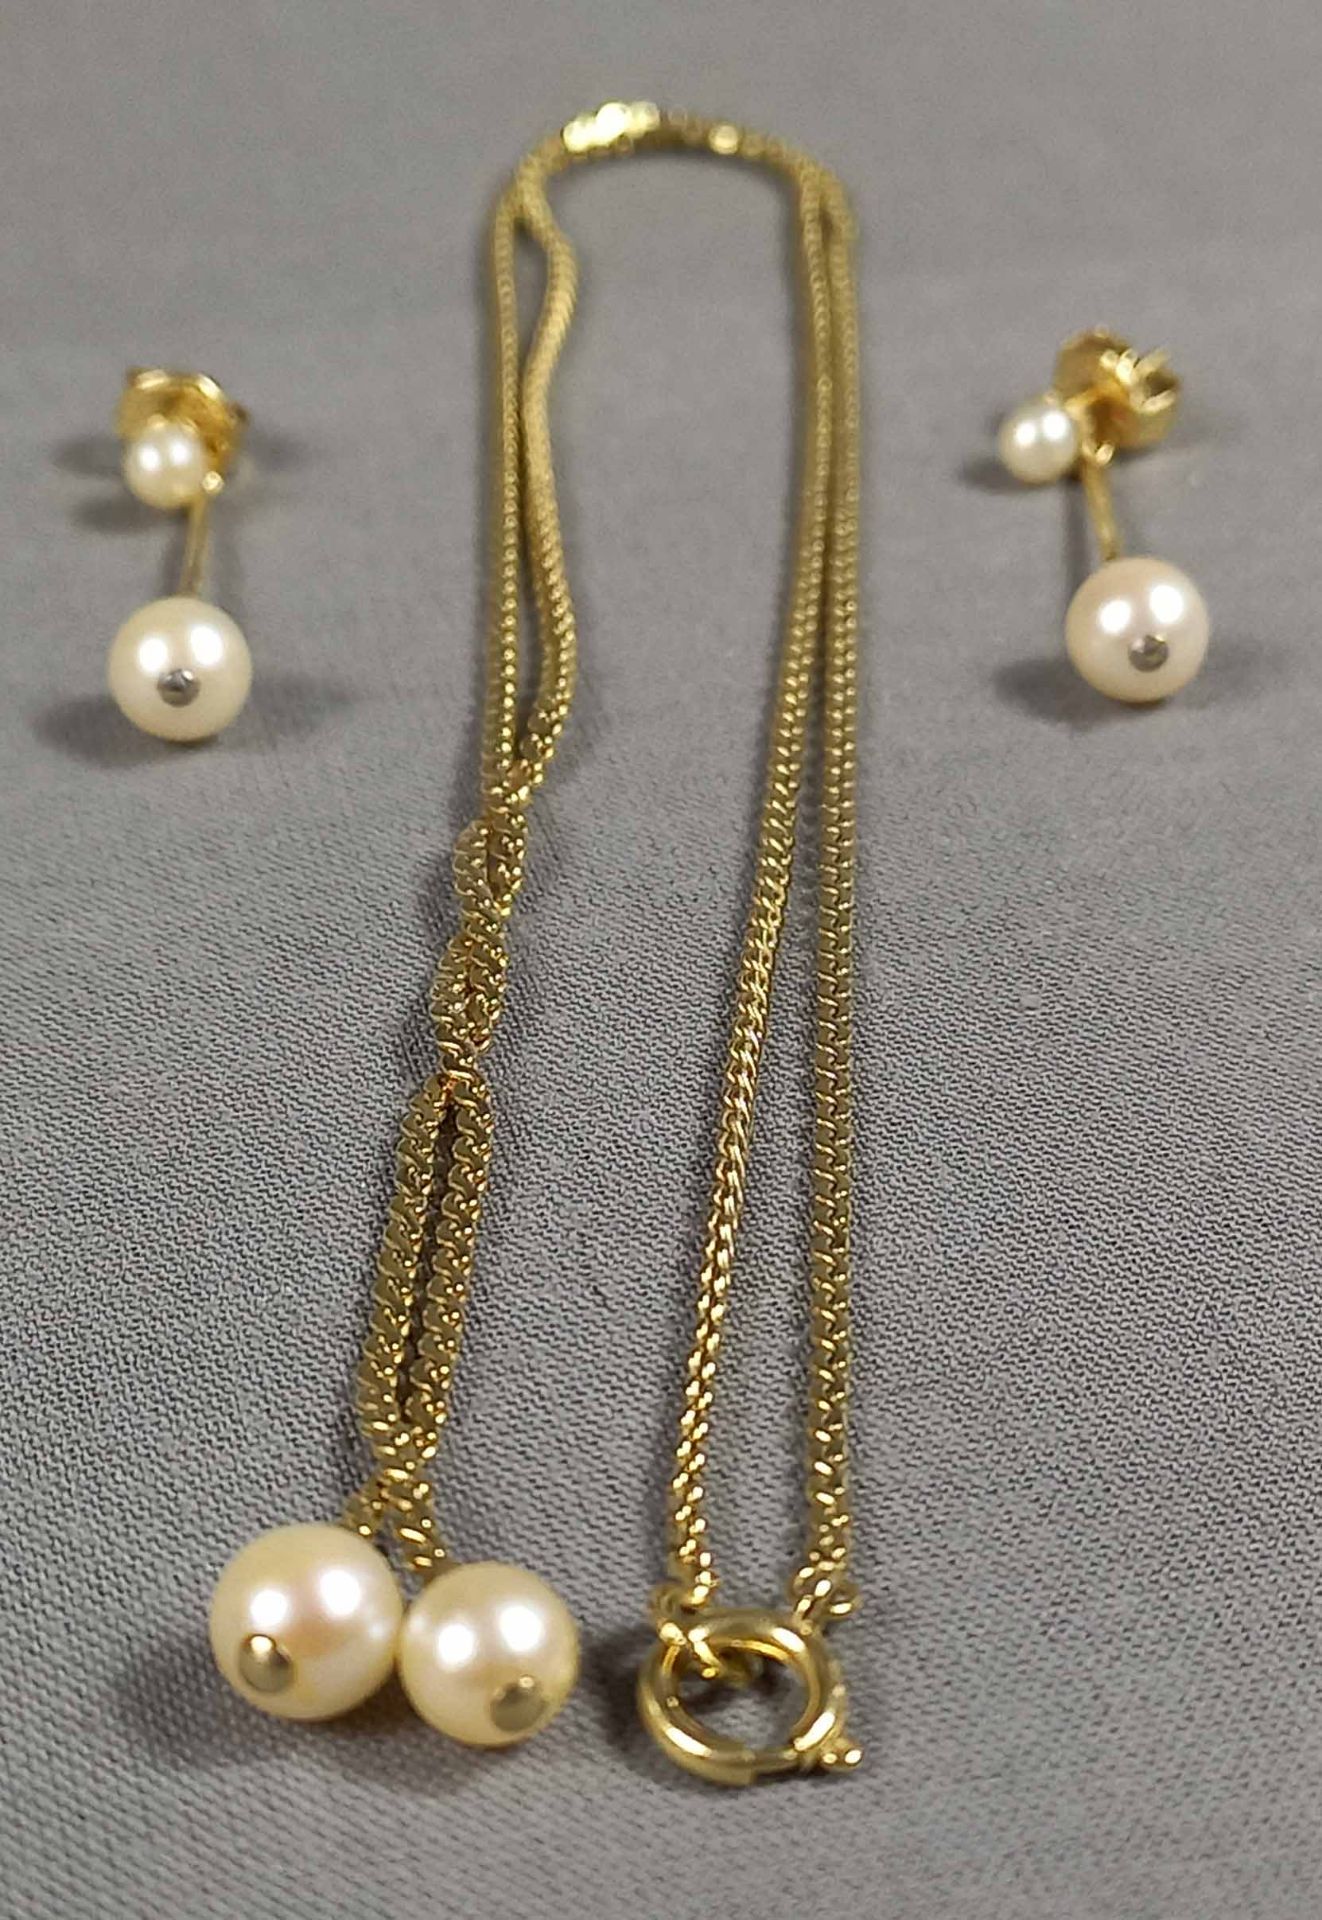 Collier mit passenden Ohrhängern. Gold 585. 6 Perlen. - Bild 2 aus 16